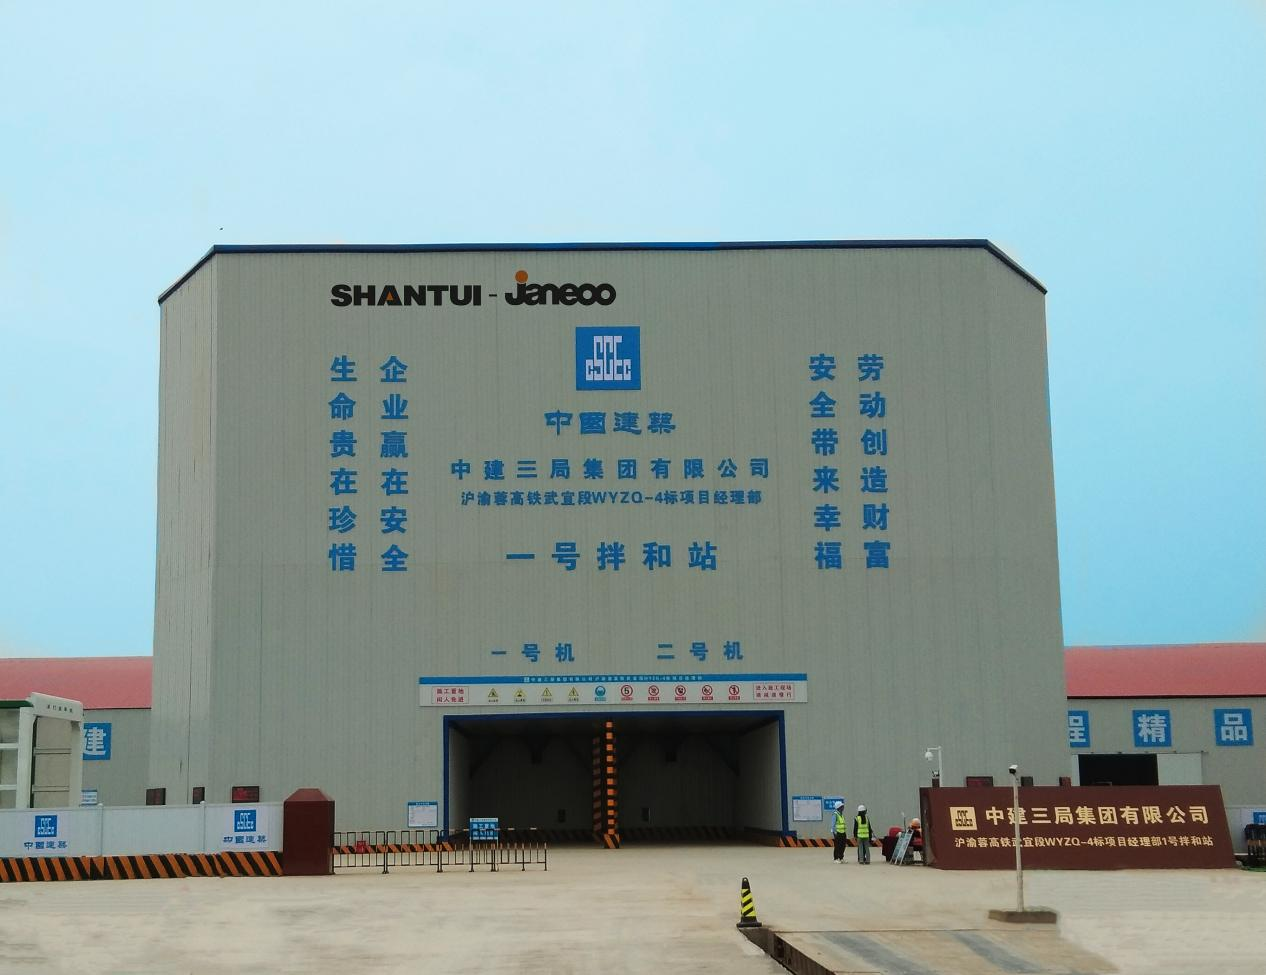 Продукция Shantui Janeoo используется при строительстве высокоскоростной железной дороги Шанхай-Чунцин-Чэнду.